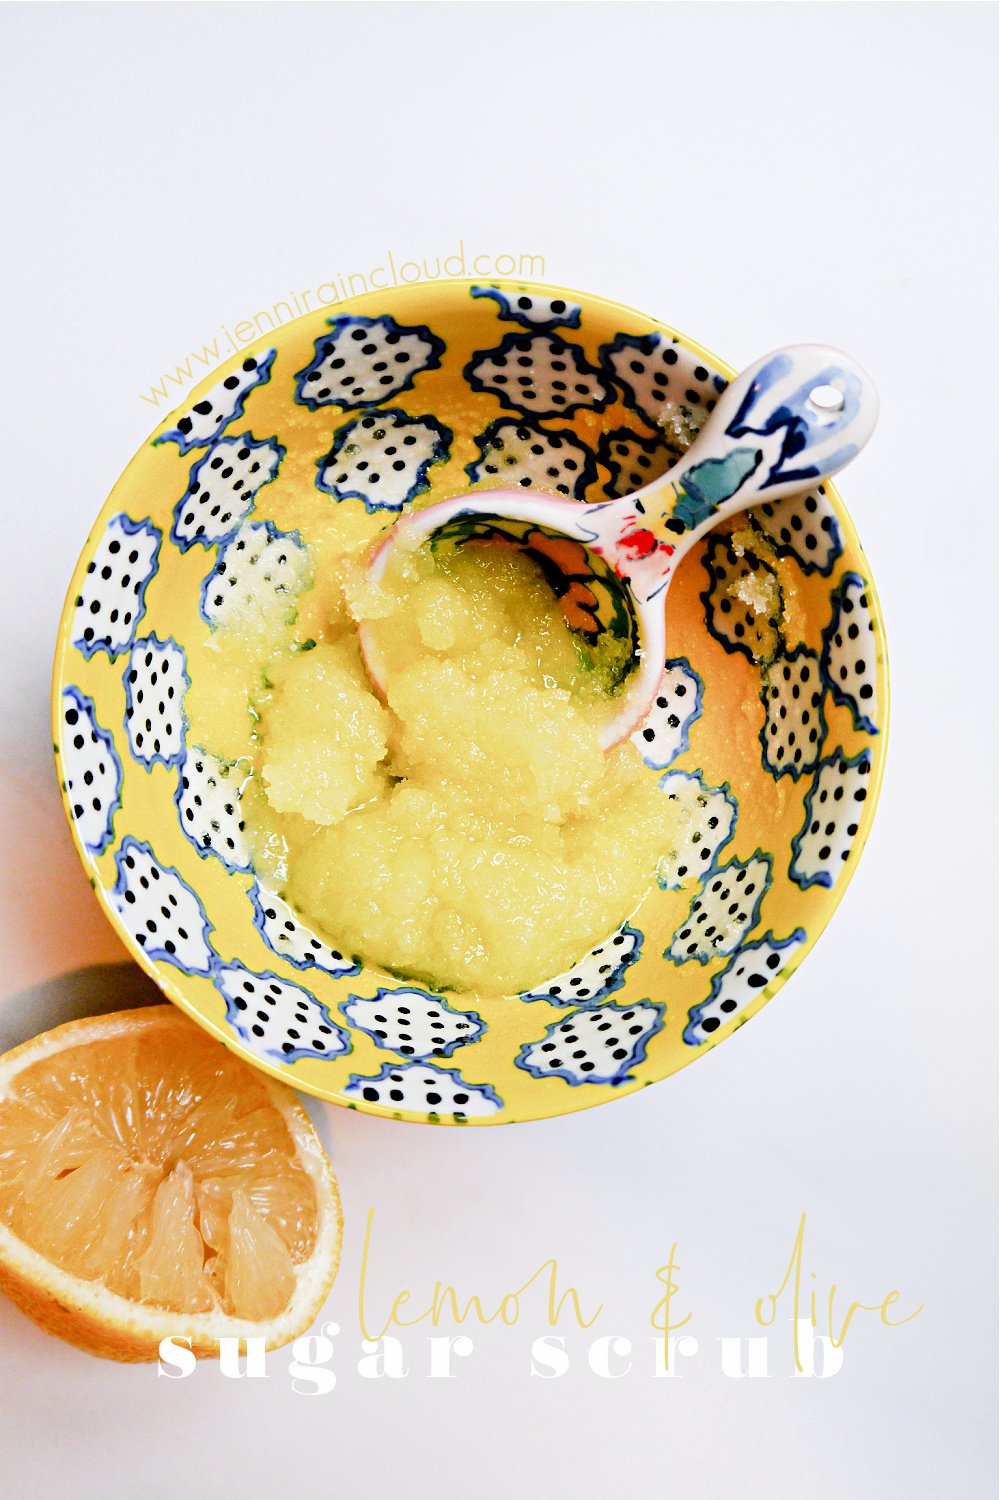 DIY Sugar Scrub with Lemon & Olive Oil